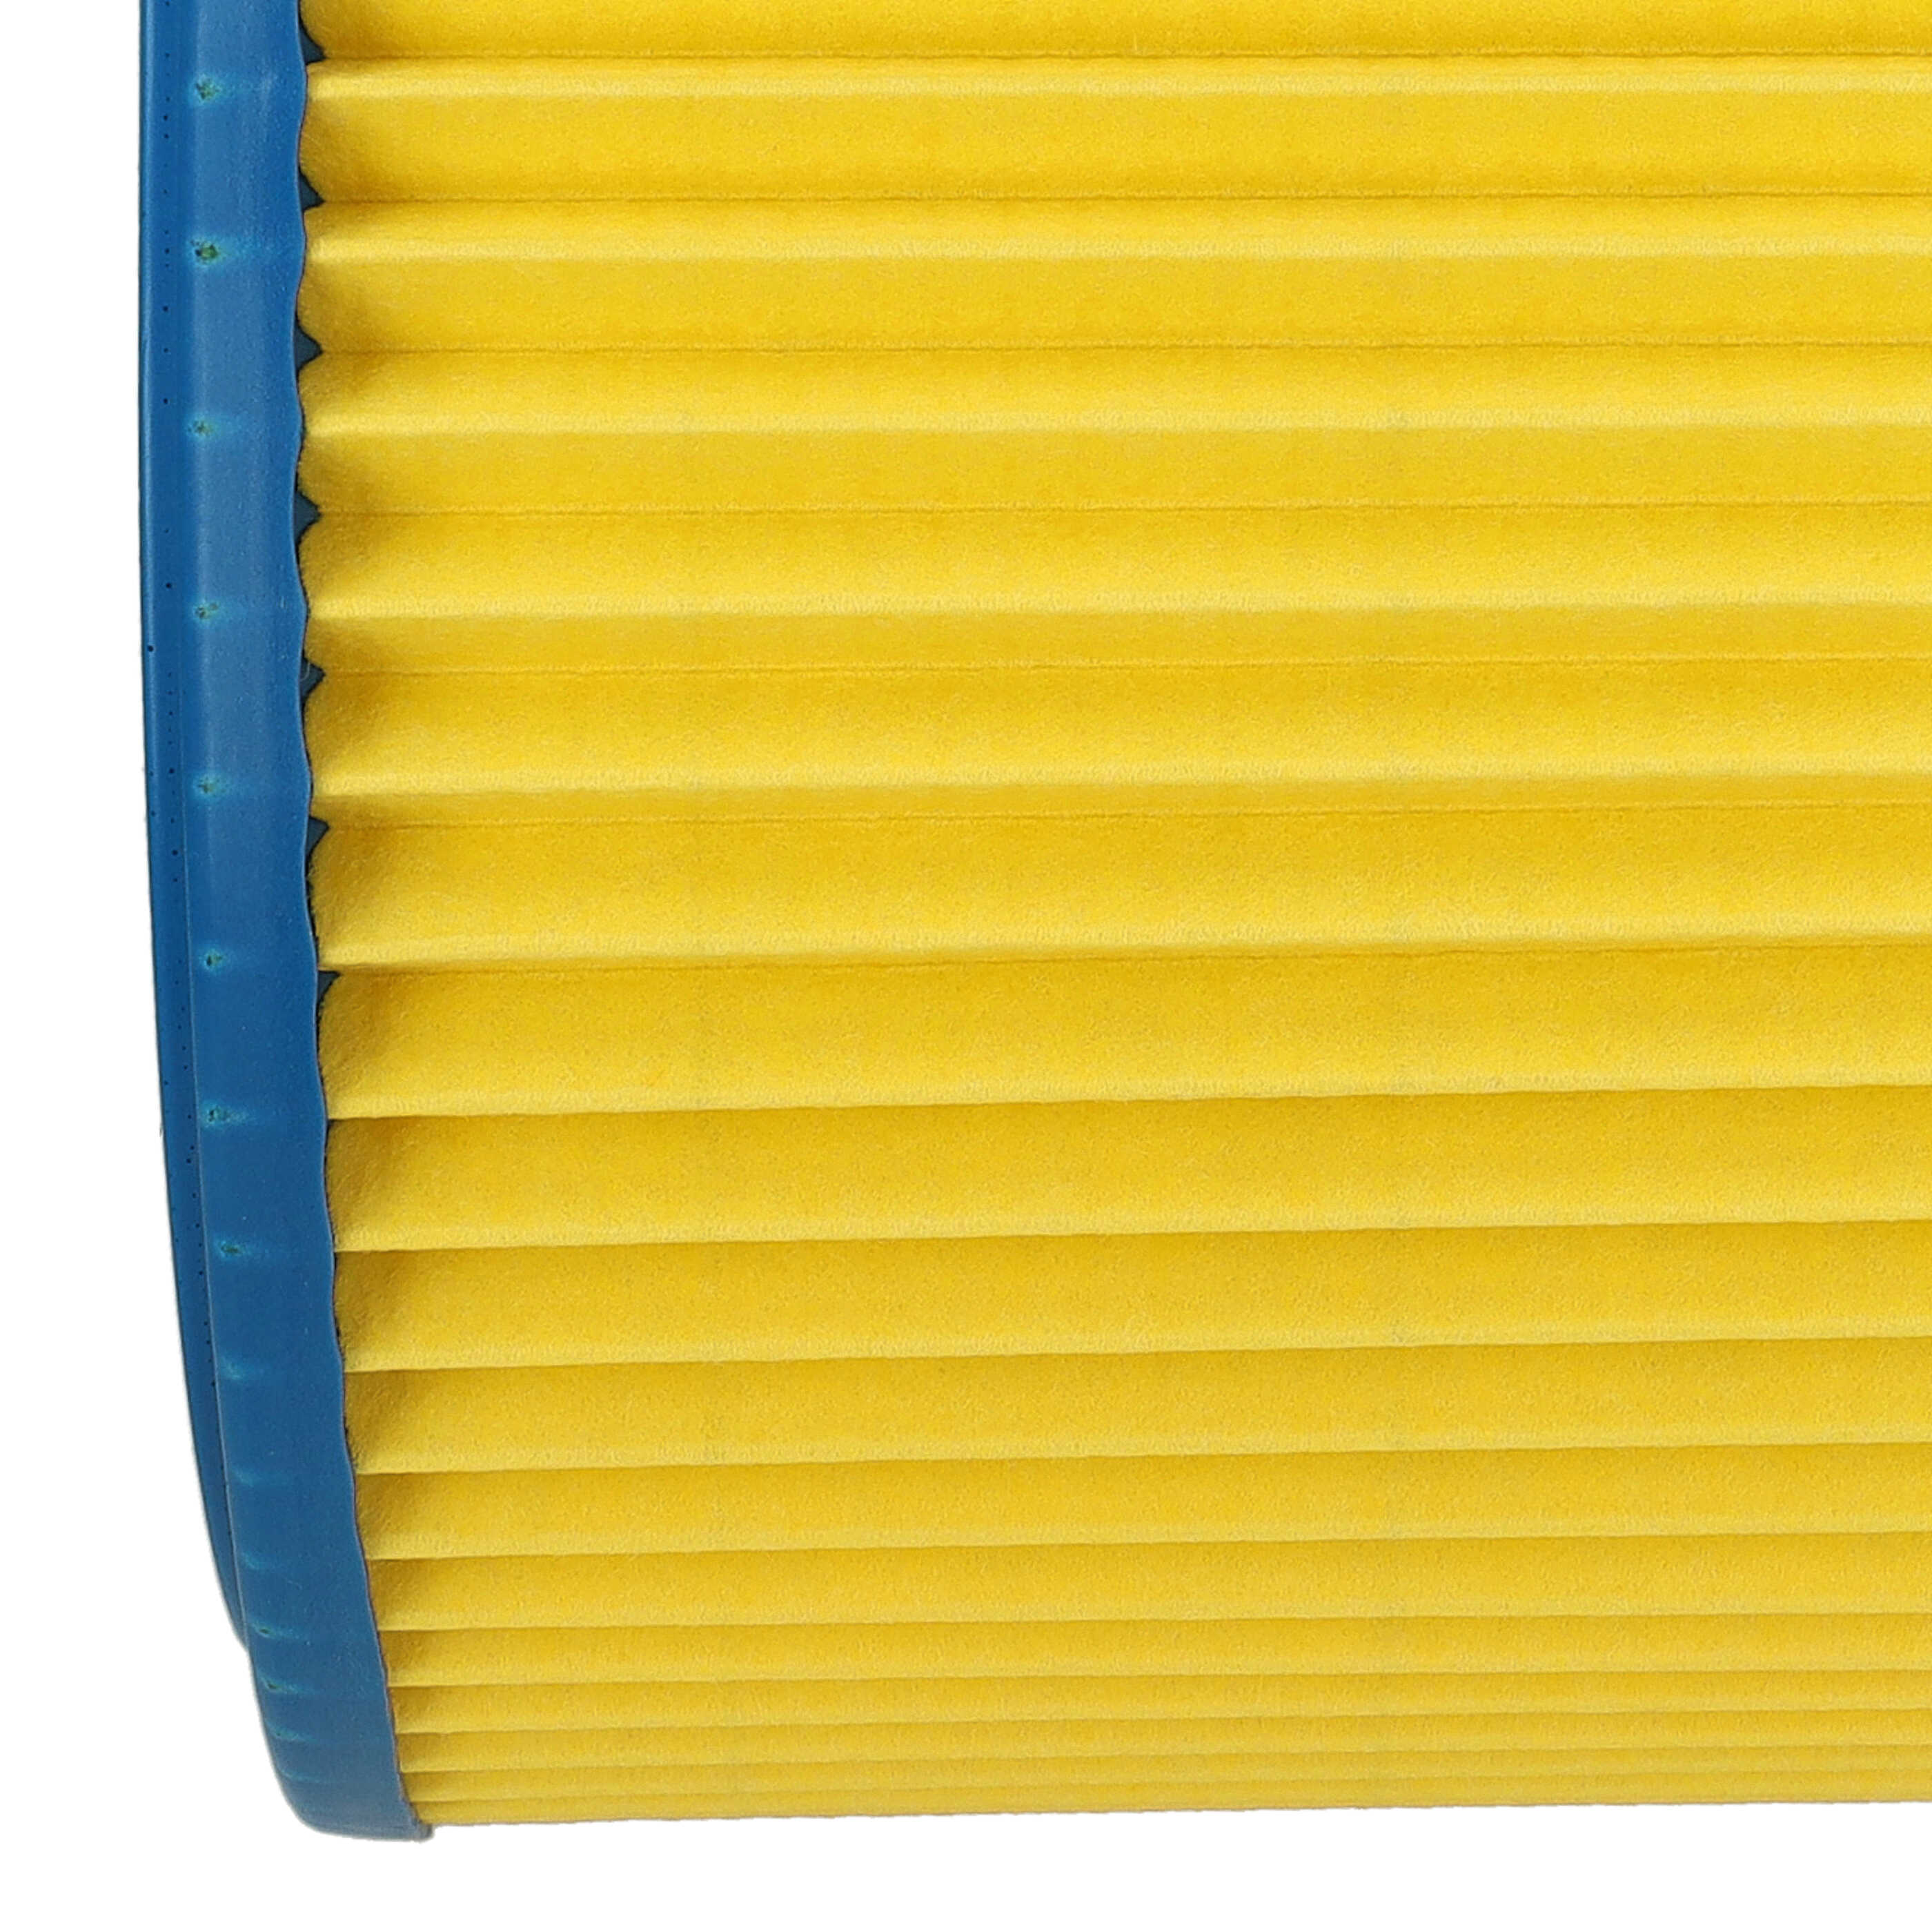 Filtr do odkurzacza Thomas zamiennik Einhell 2351110 - wkład filtracyjny, niebieski / żółty